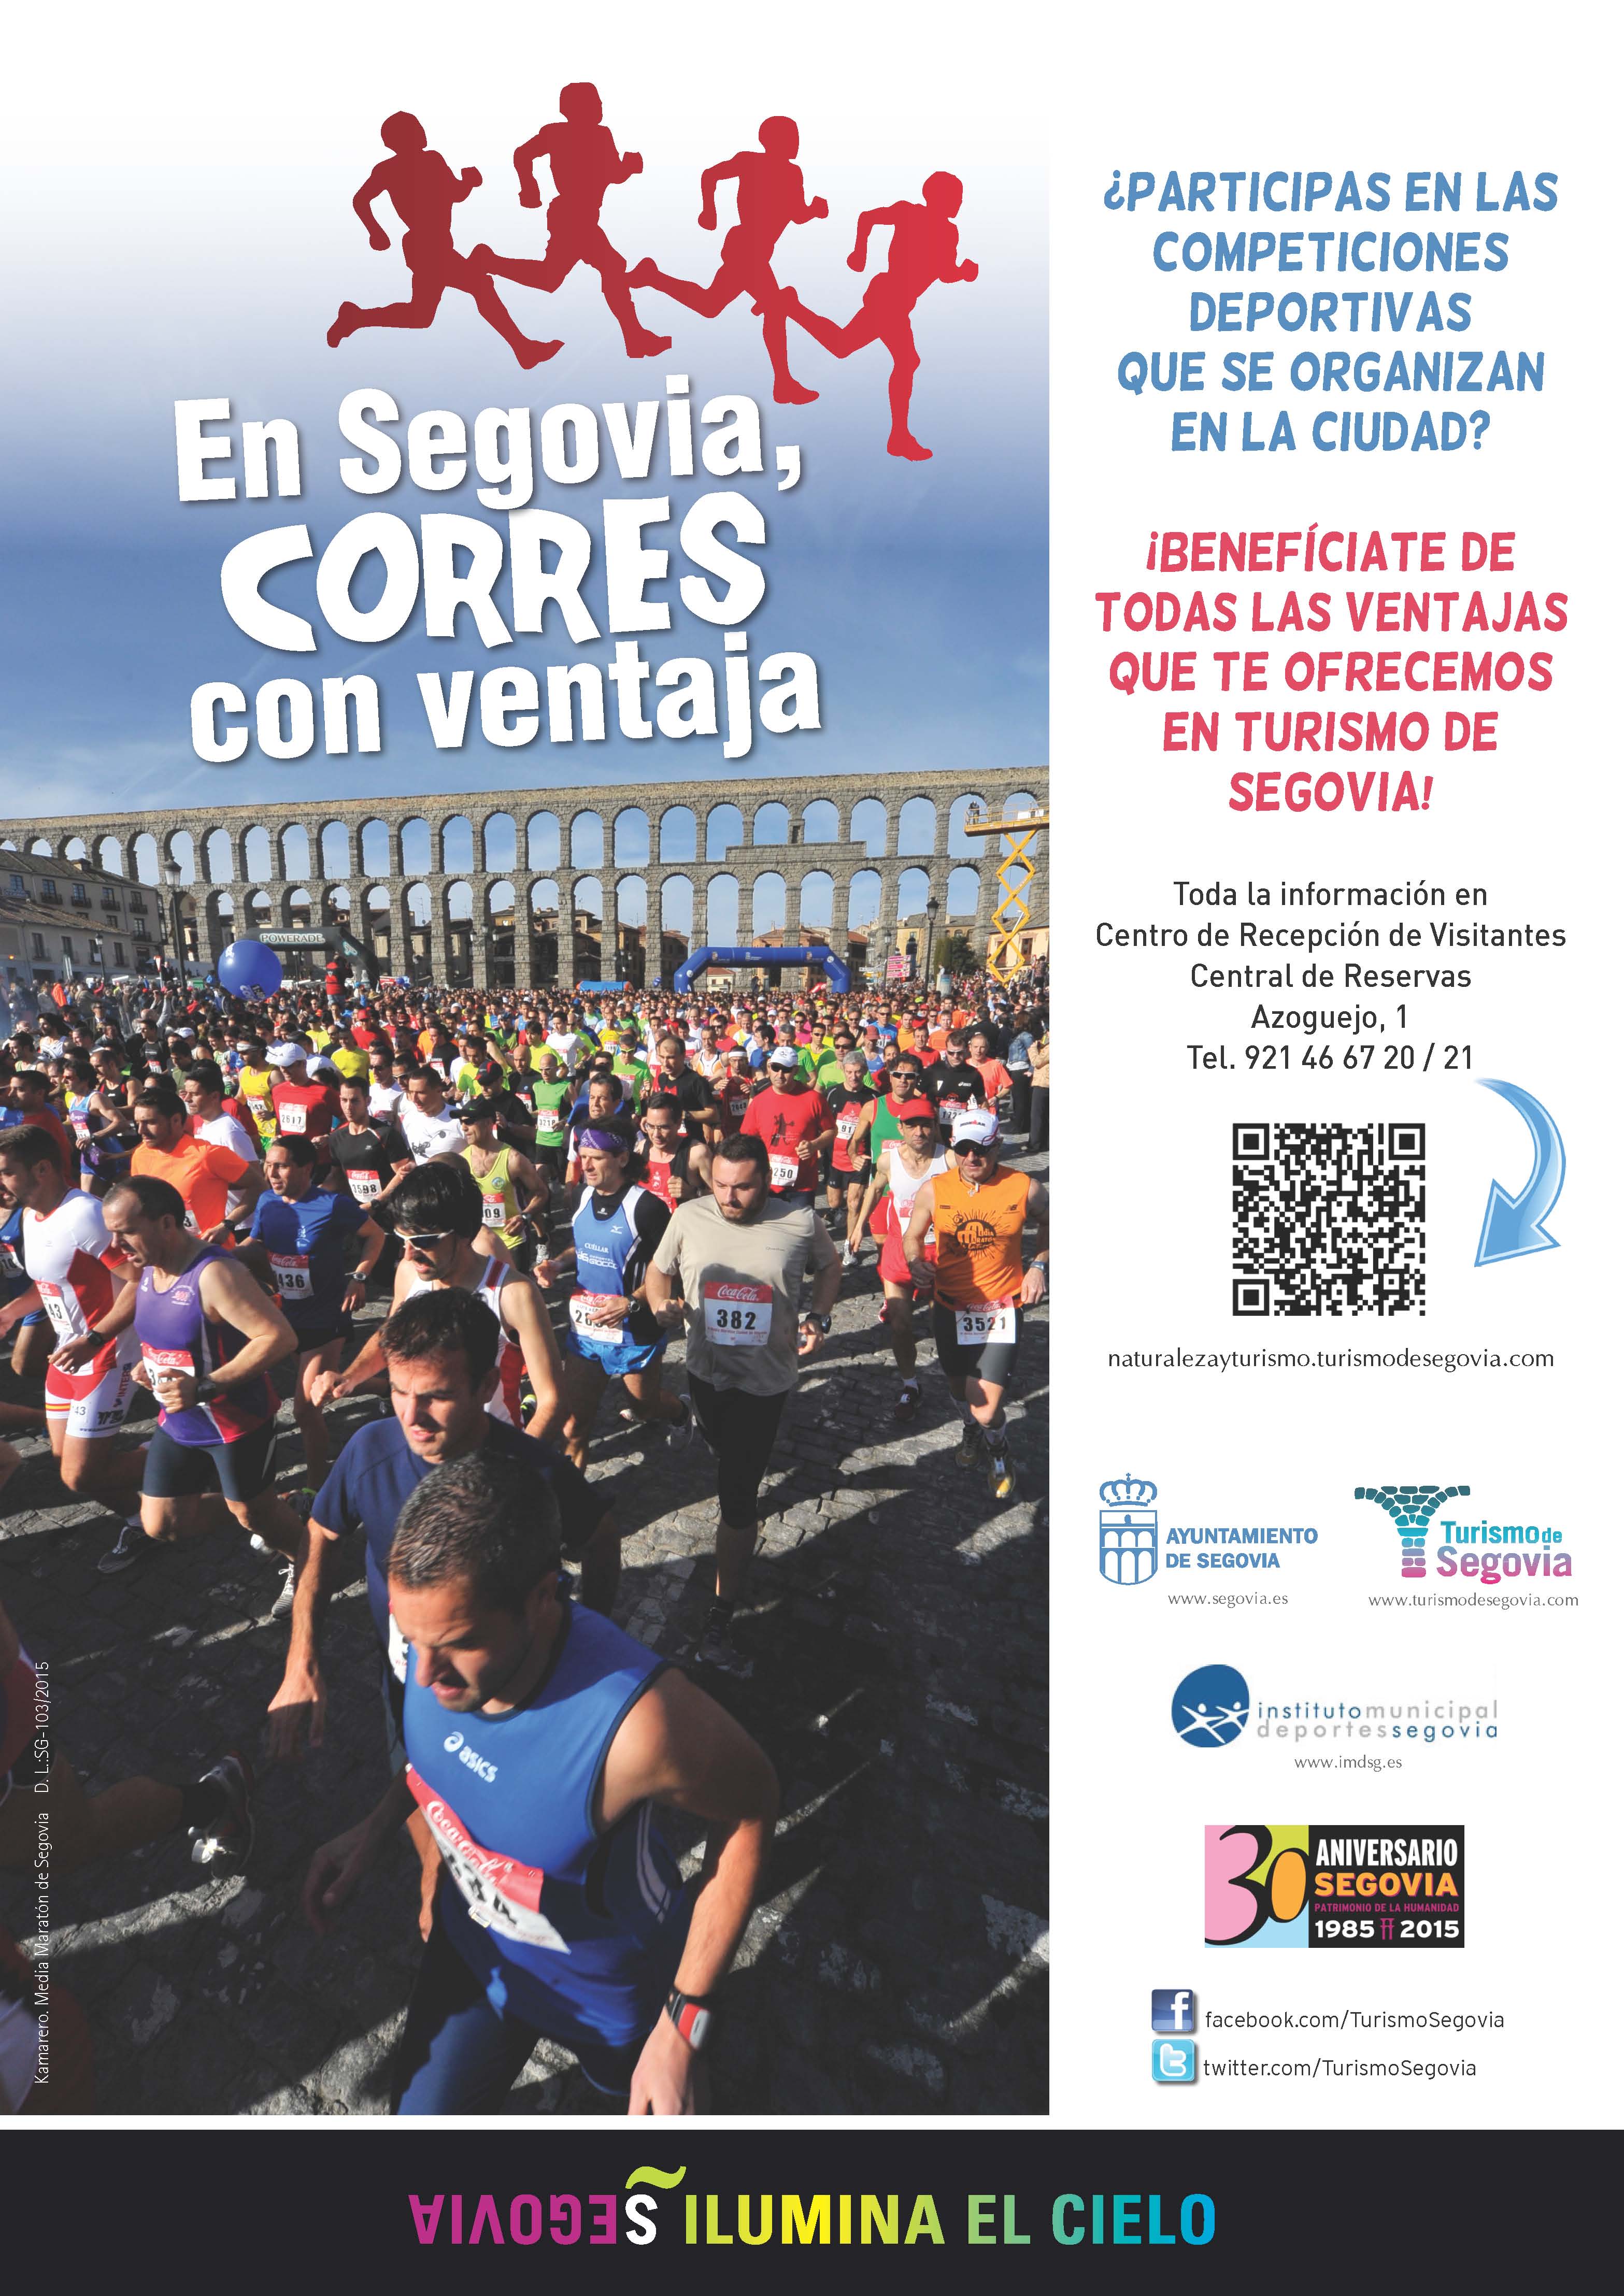 Turismo de Segovia ofrece ventajas a los aficionados al Running que participen en pruebas en nuestra ciudad